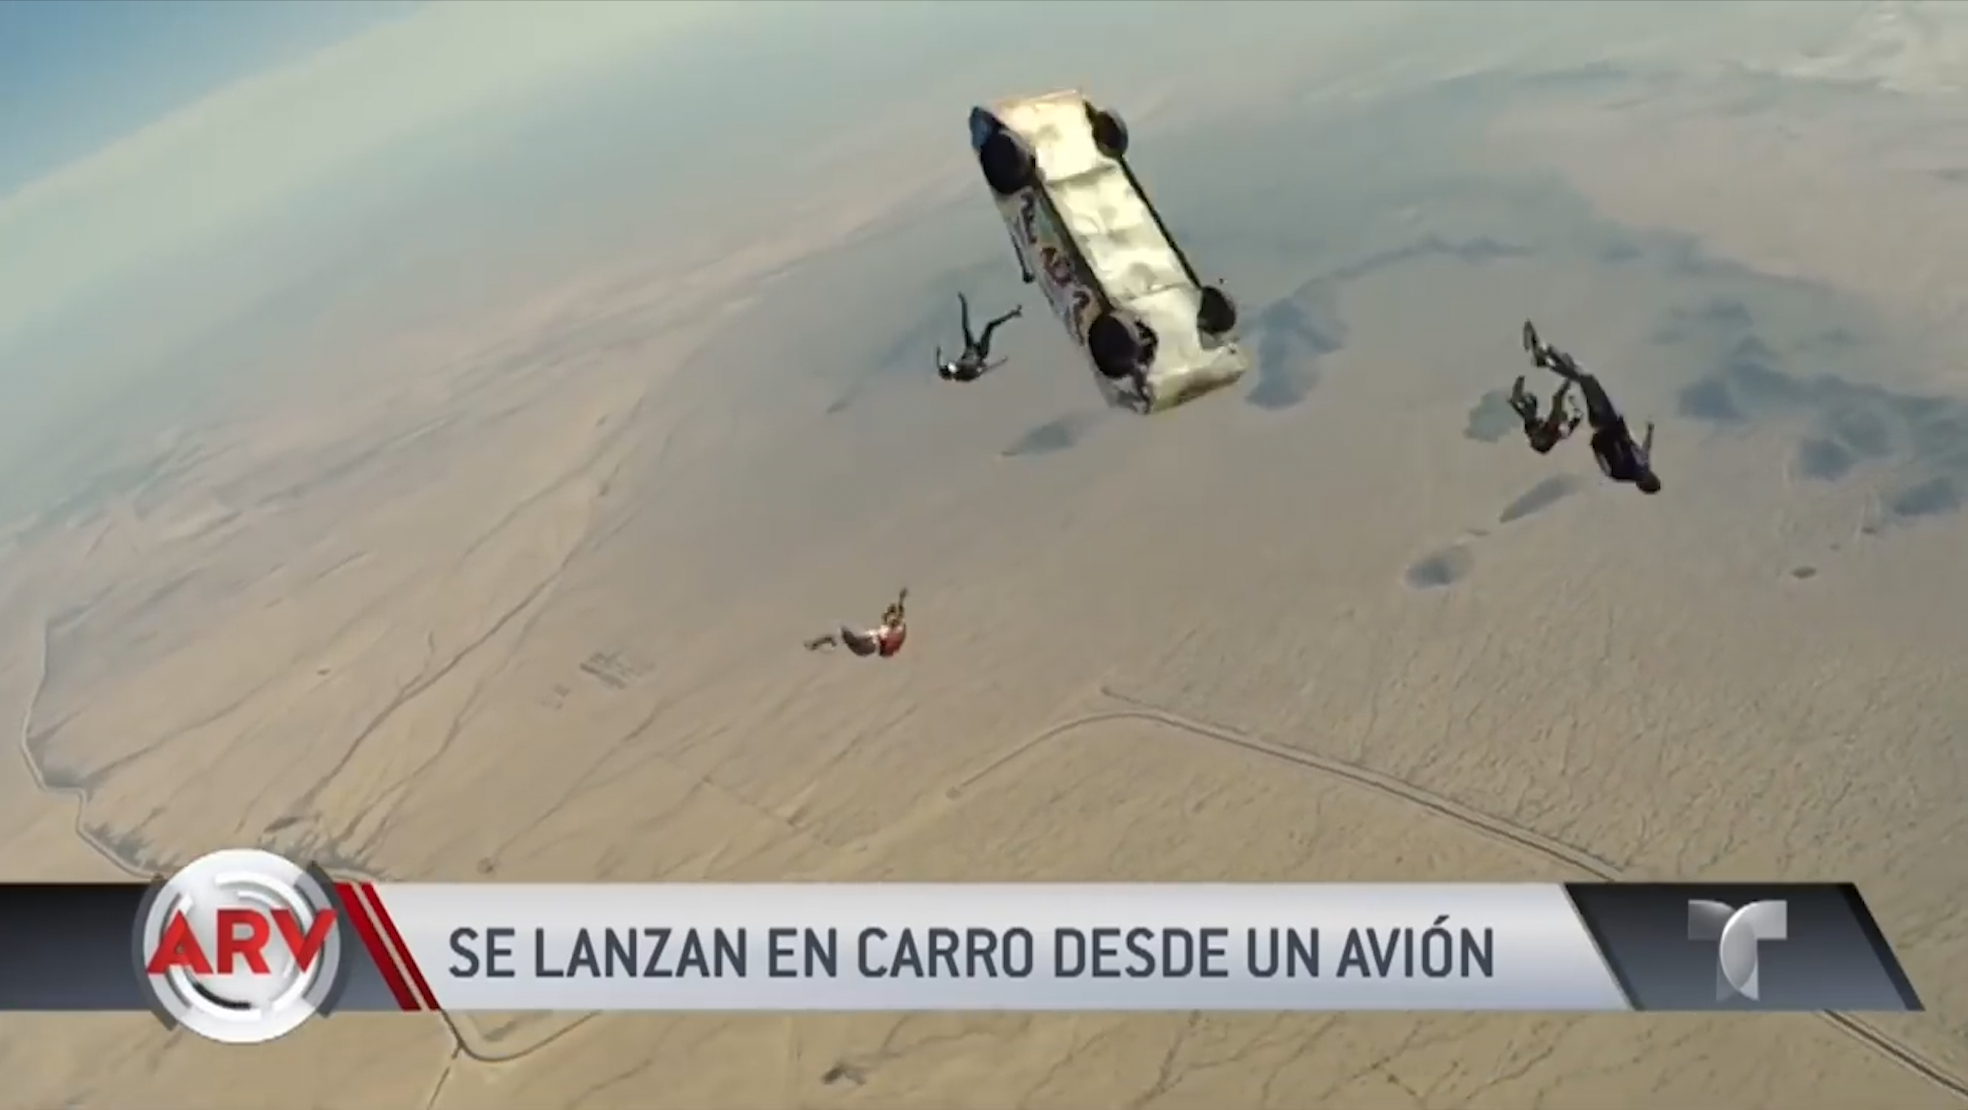 WOW! Paracaidista Se Lanzan En Carro Desde Un Avión